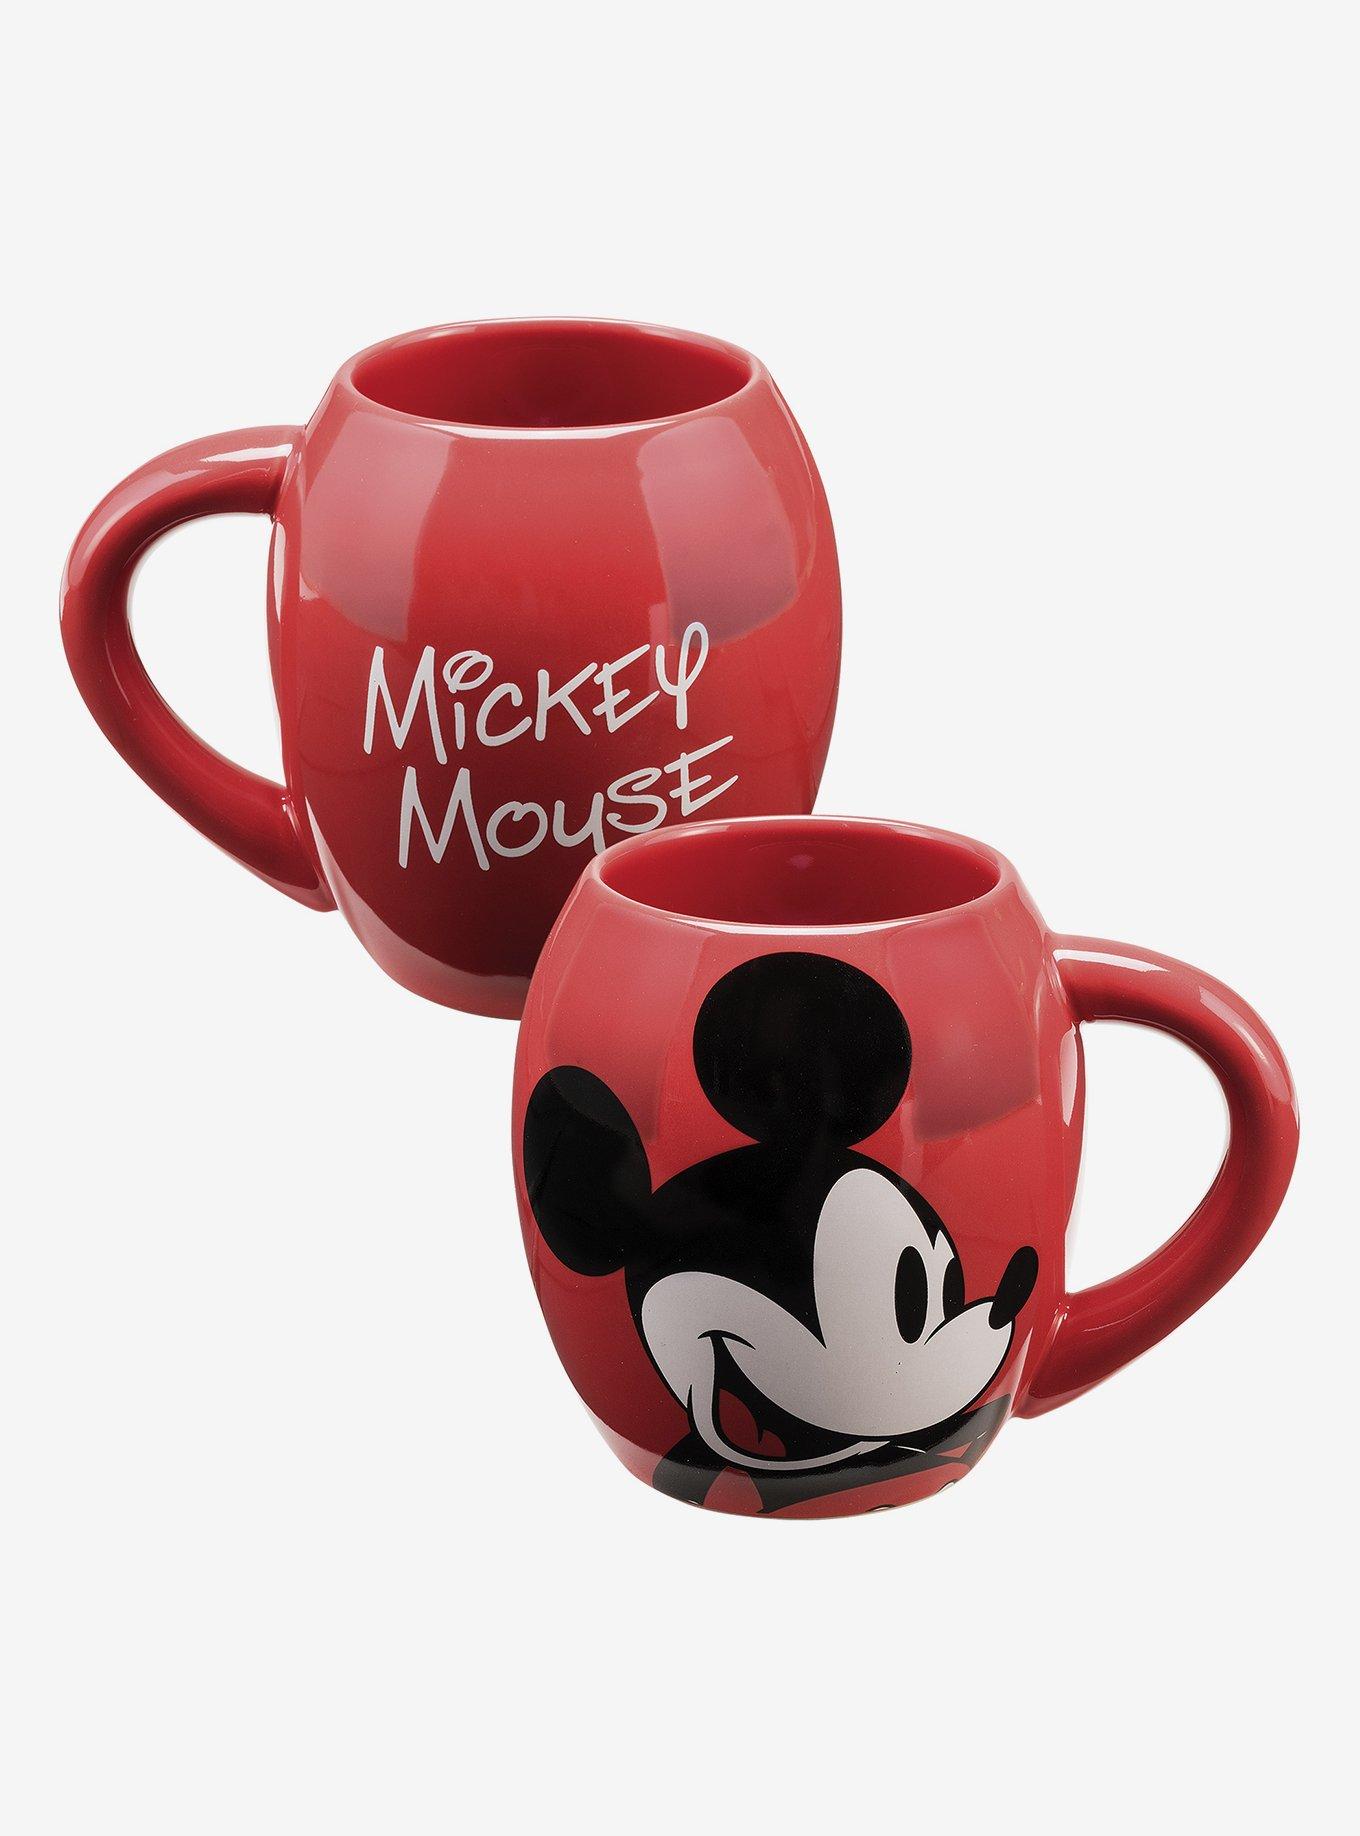 Disney (90 Years of Mickey) Morphing Mugs MMUG750